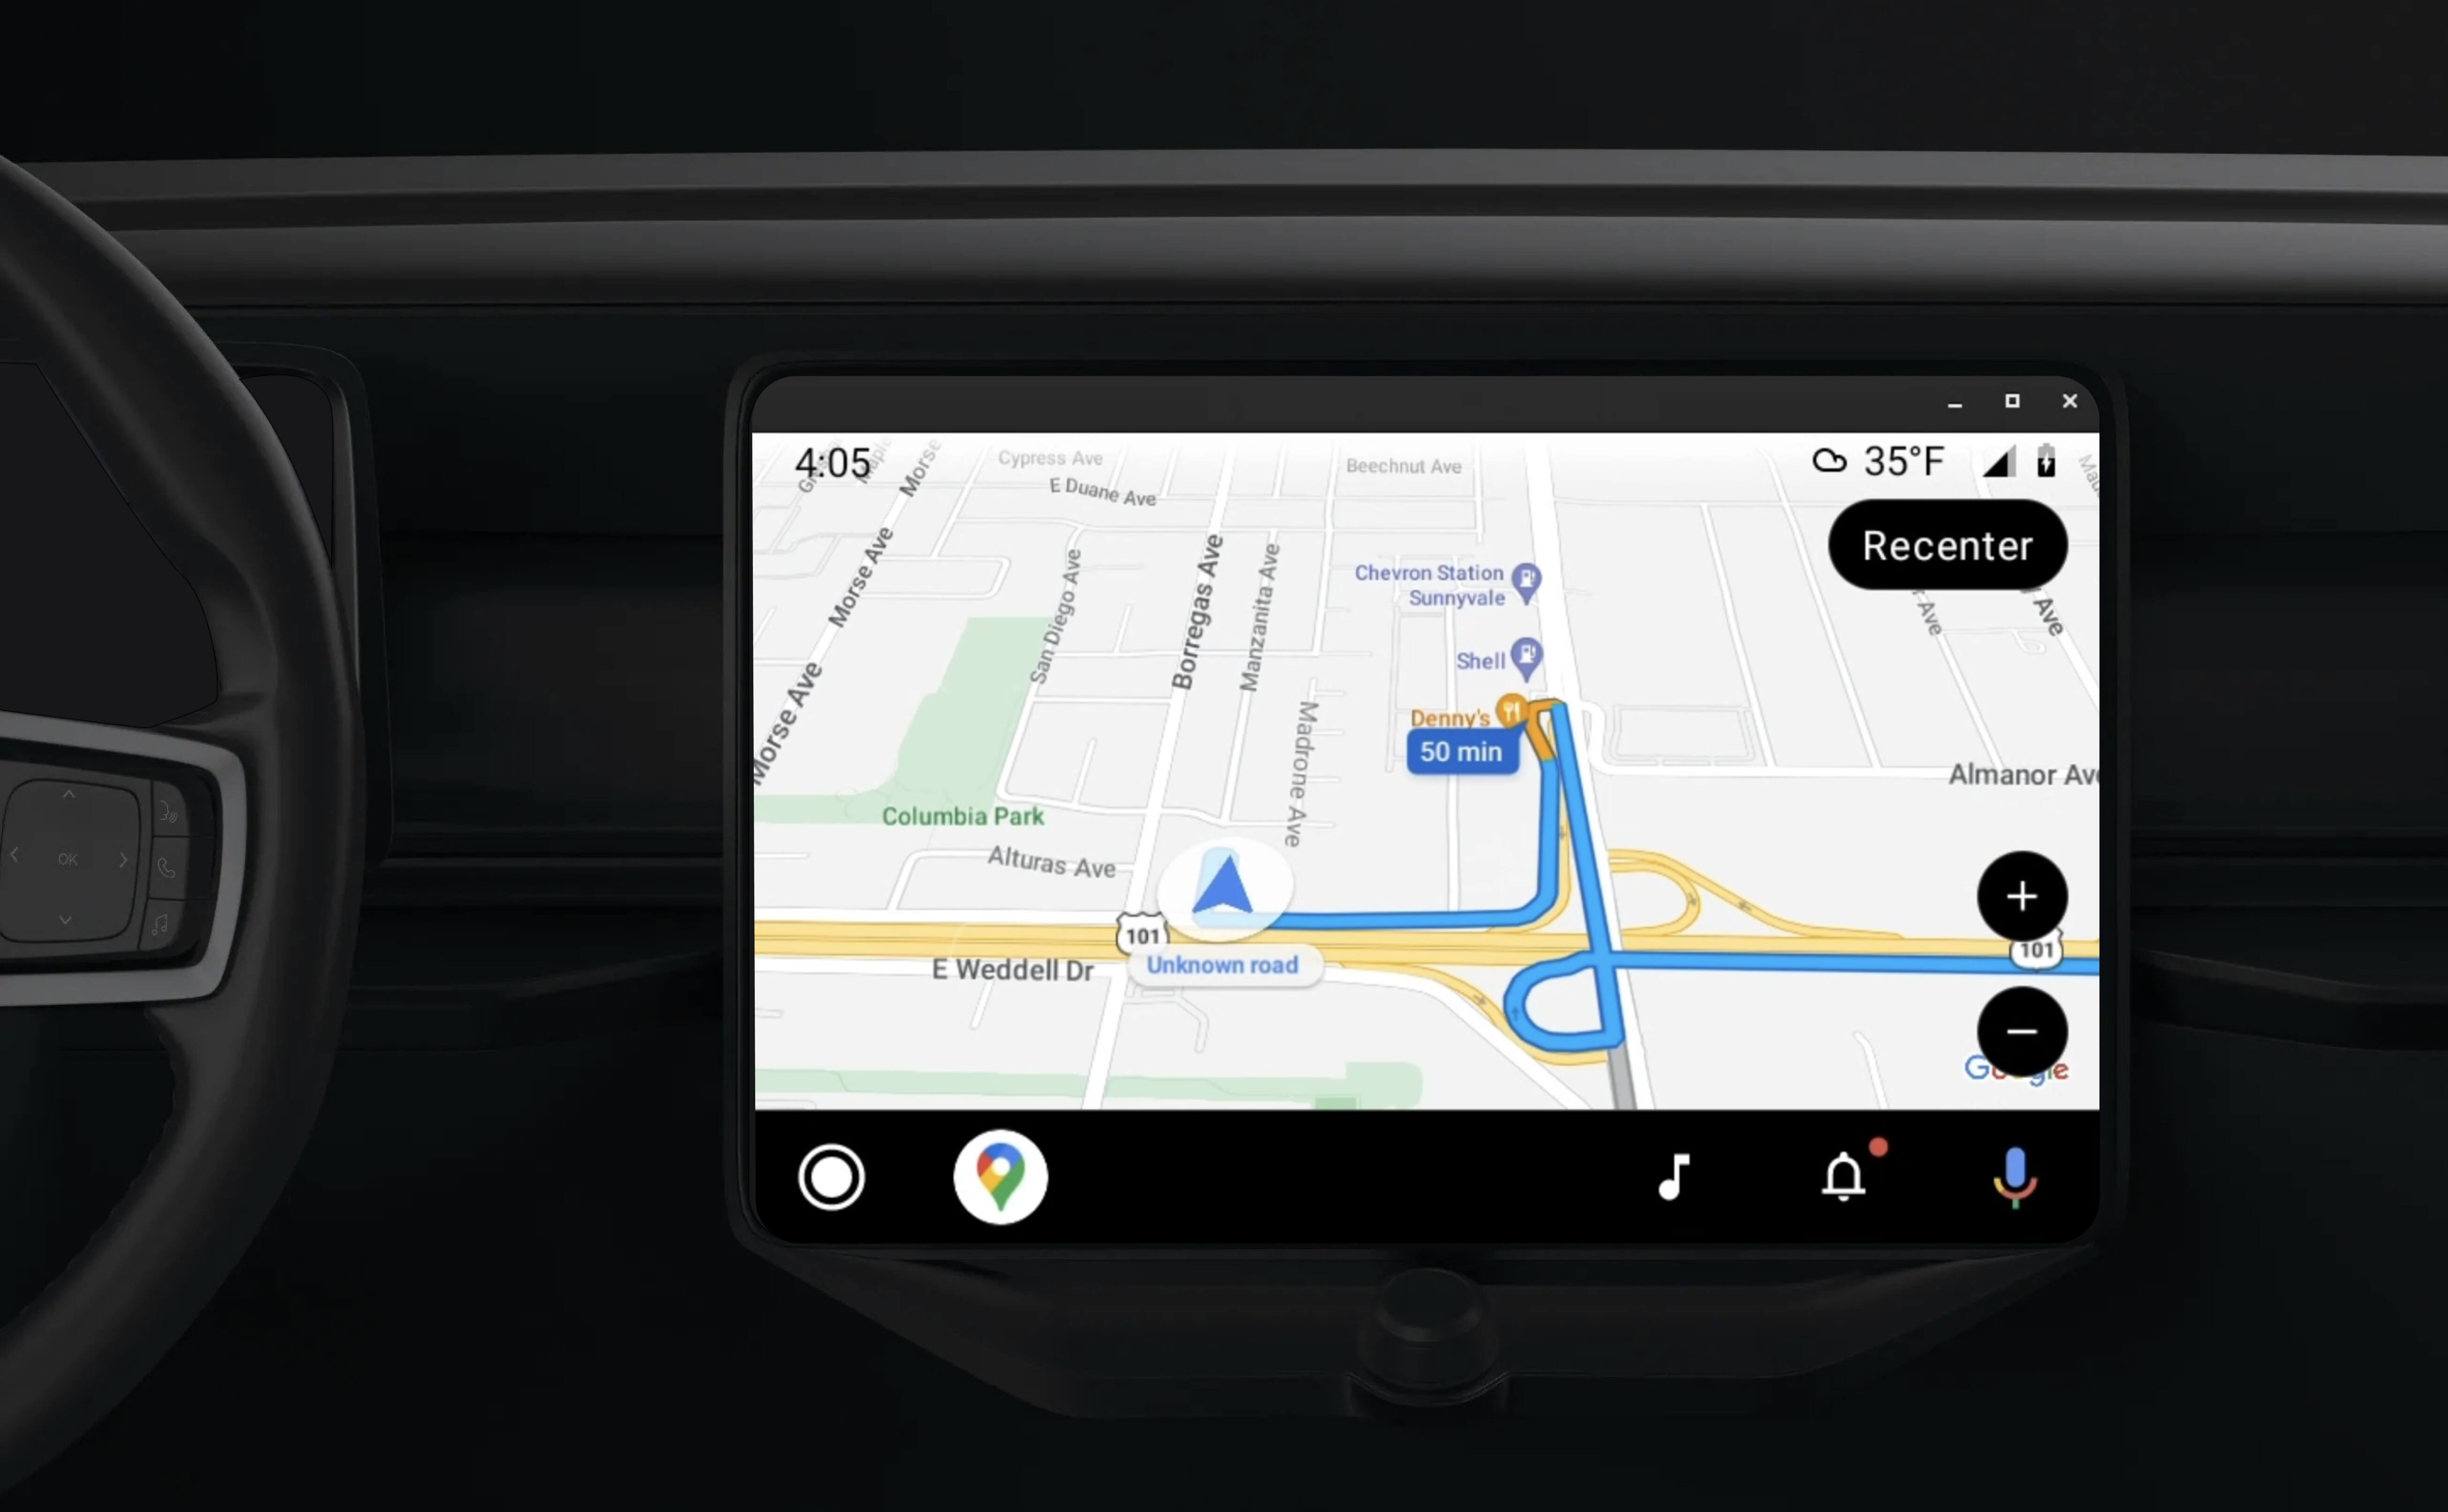 Jednostka główna w desce rozdzielczej wyświetlająca wskazówki nawigacyjne przy użyciu aplikacji obsługującej Androida Auto.